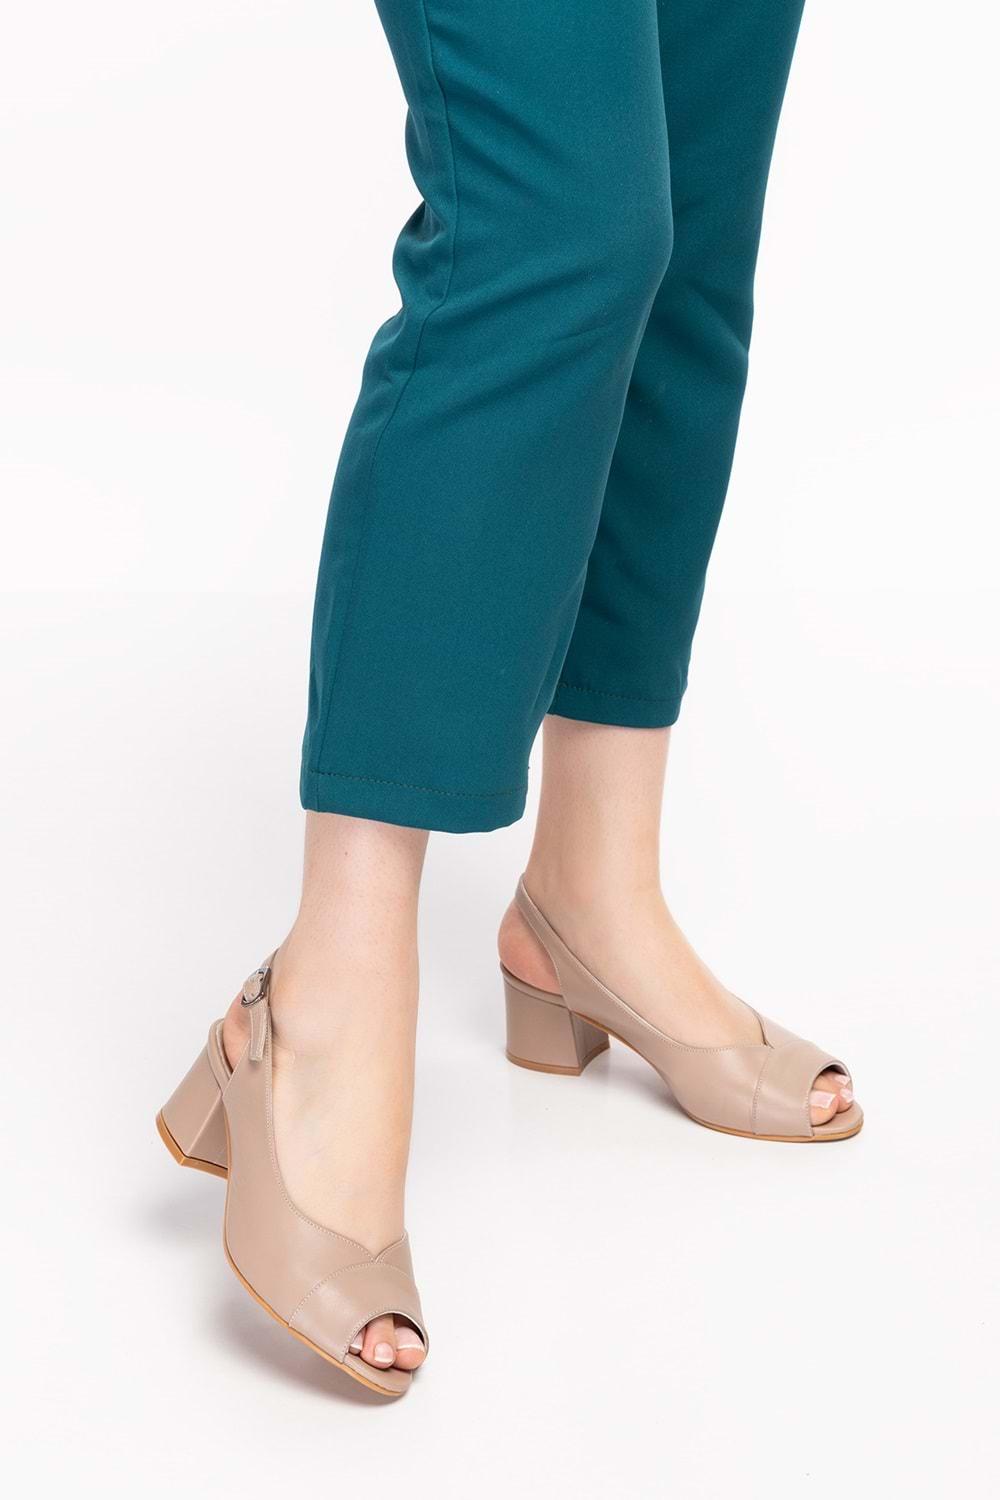 Gondol Kadın Hakiki Deri Klasik Topuklu Ayakkabı şhn.836 - Vizon - 36